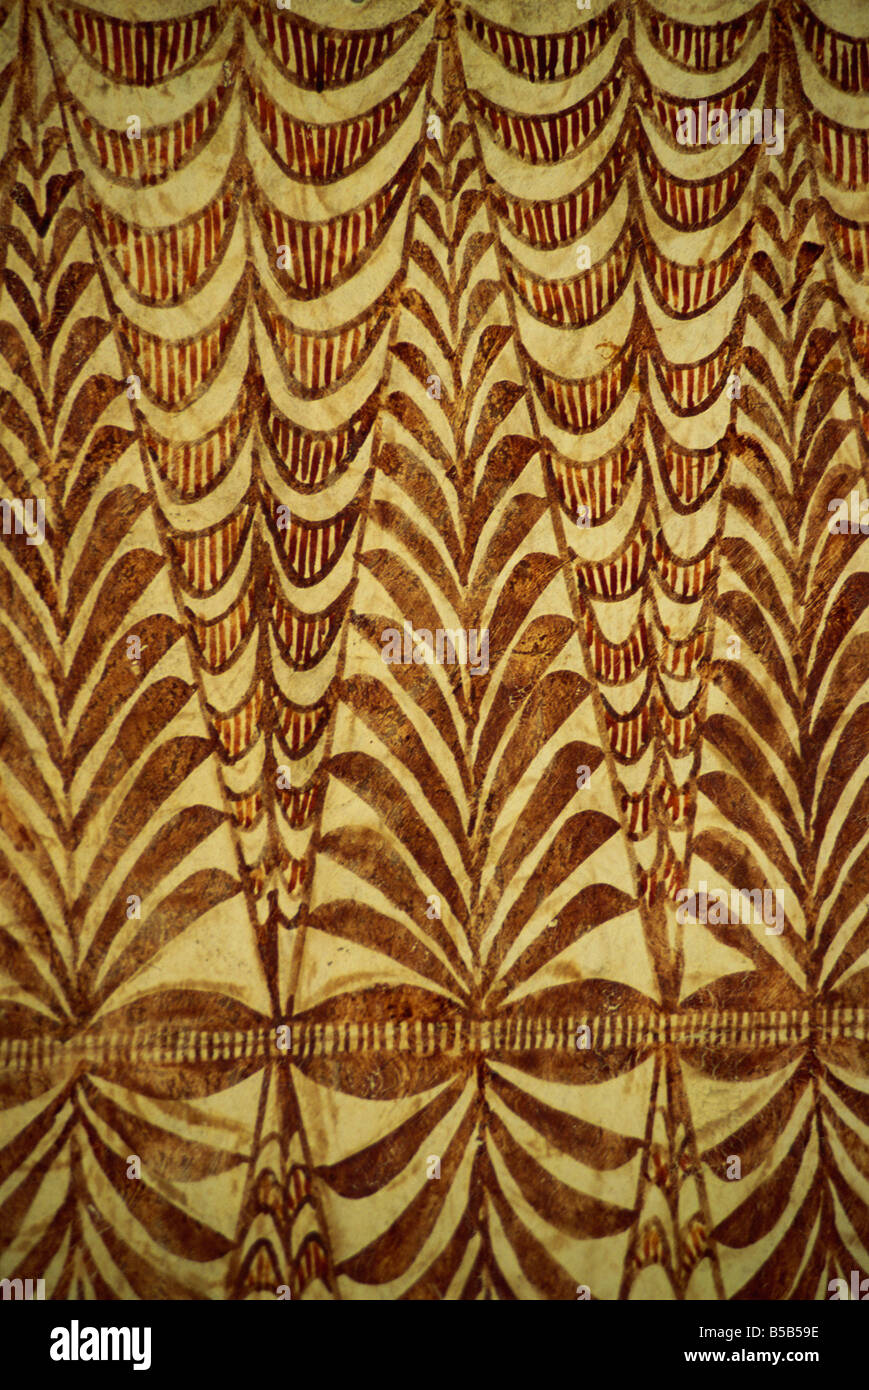 Tapa peint, battus, écorce de mûrier Nukualofa, Tonga, îles du Pacifique, Pacifique Banque D'Images